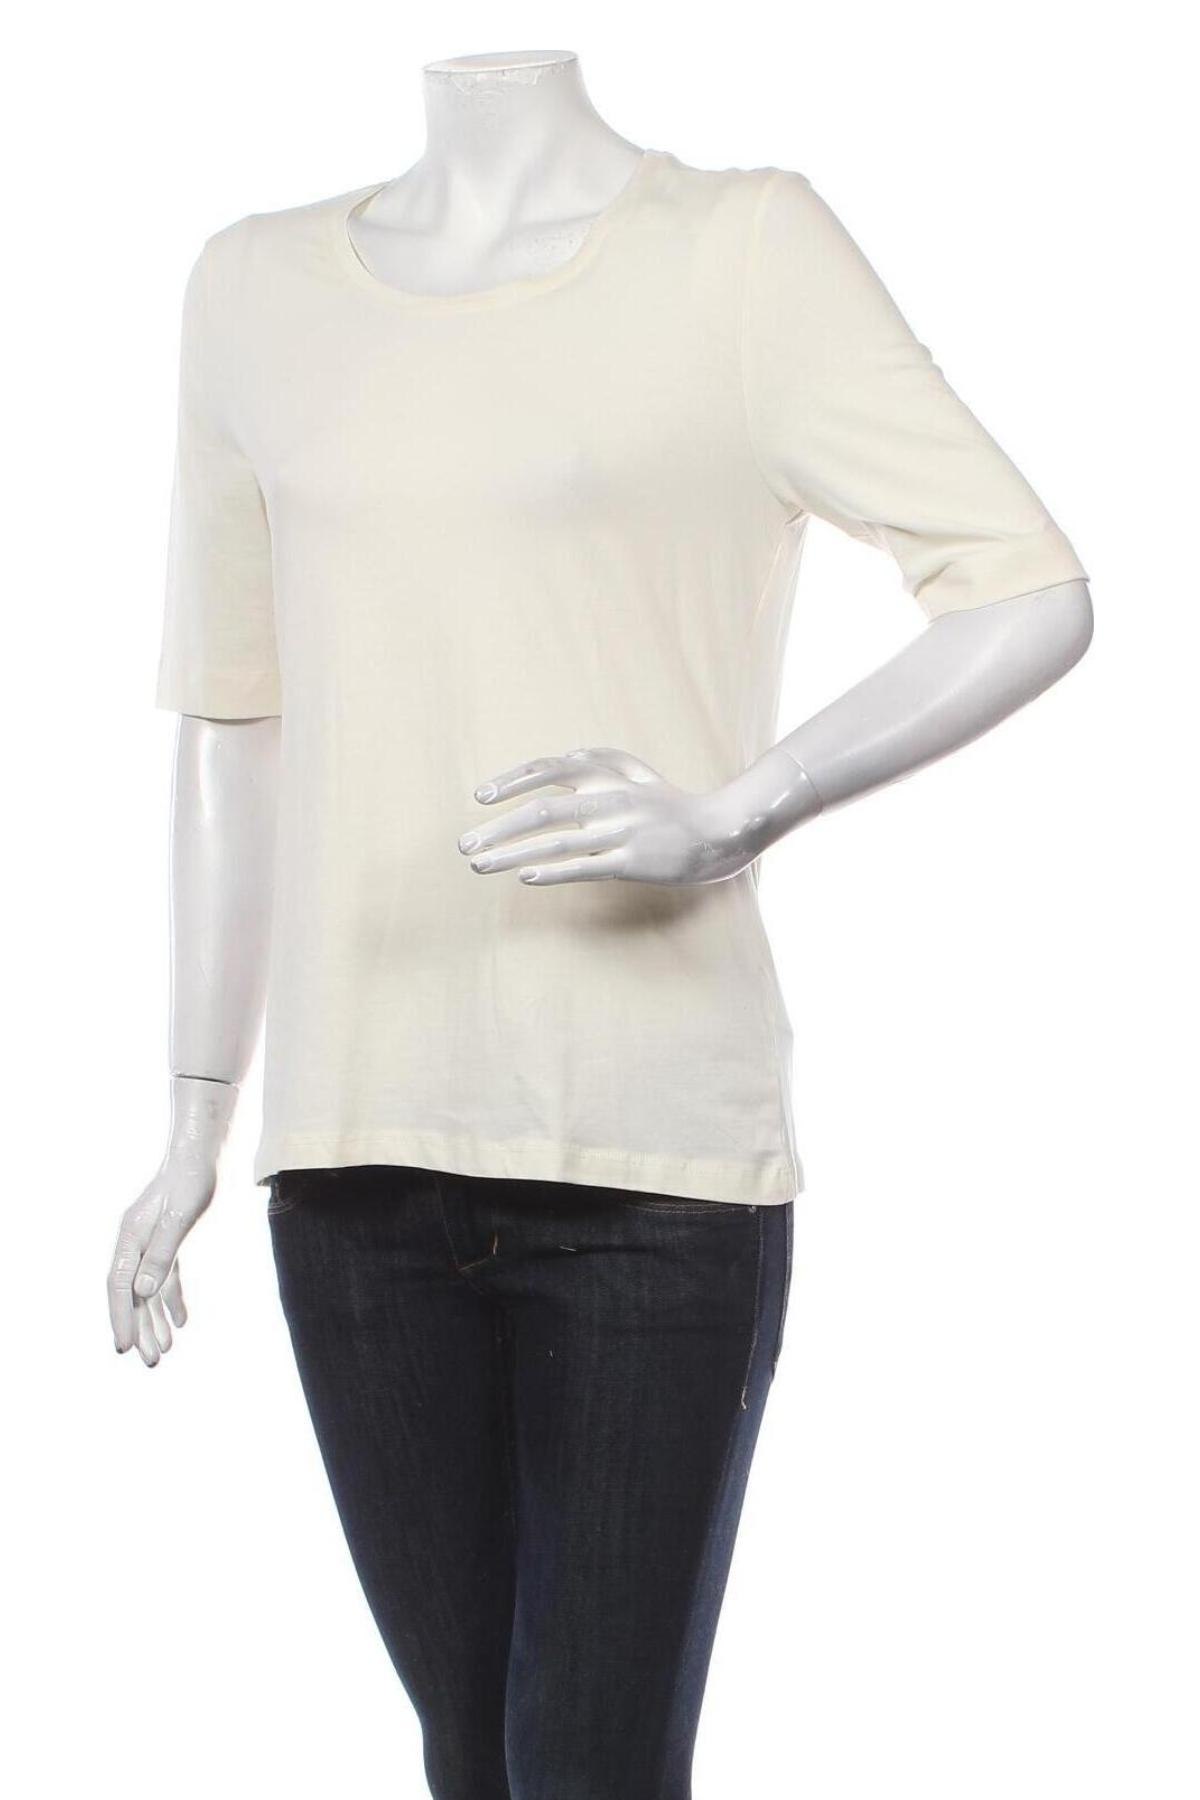 Γυναικεία μπλούζα Montego, Μέγεθος L, Χρώμα  Μπέζ, 95% βαμβάκι, 5% ελαστάνη, Τιμή 37,11 €